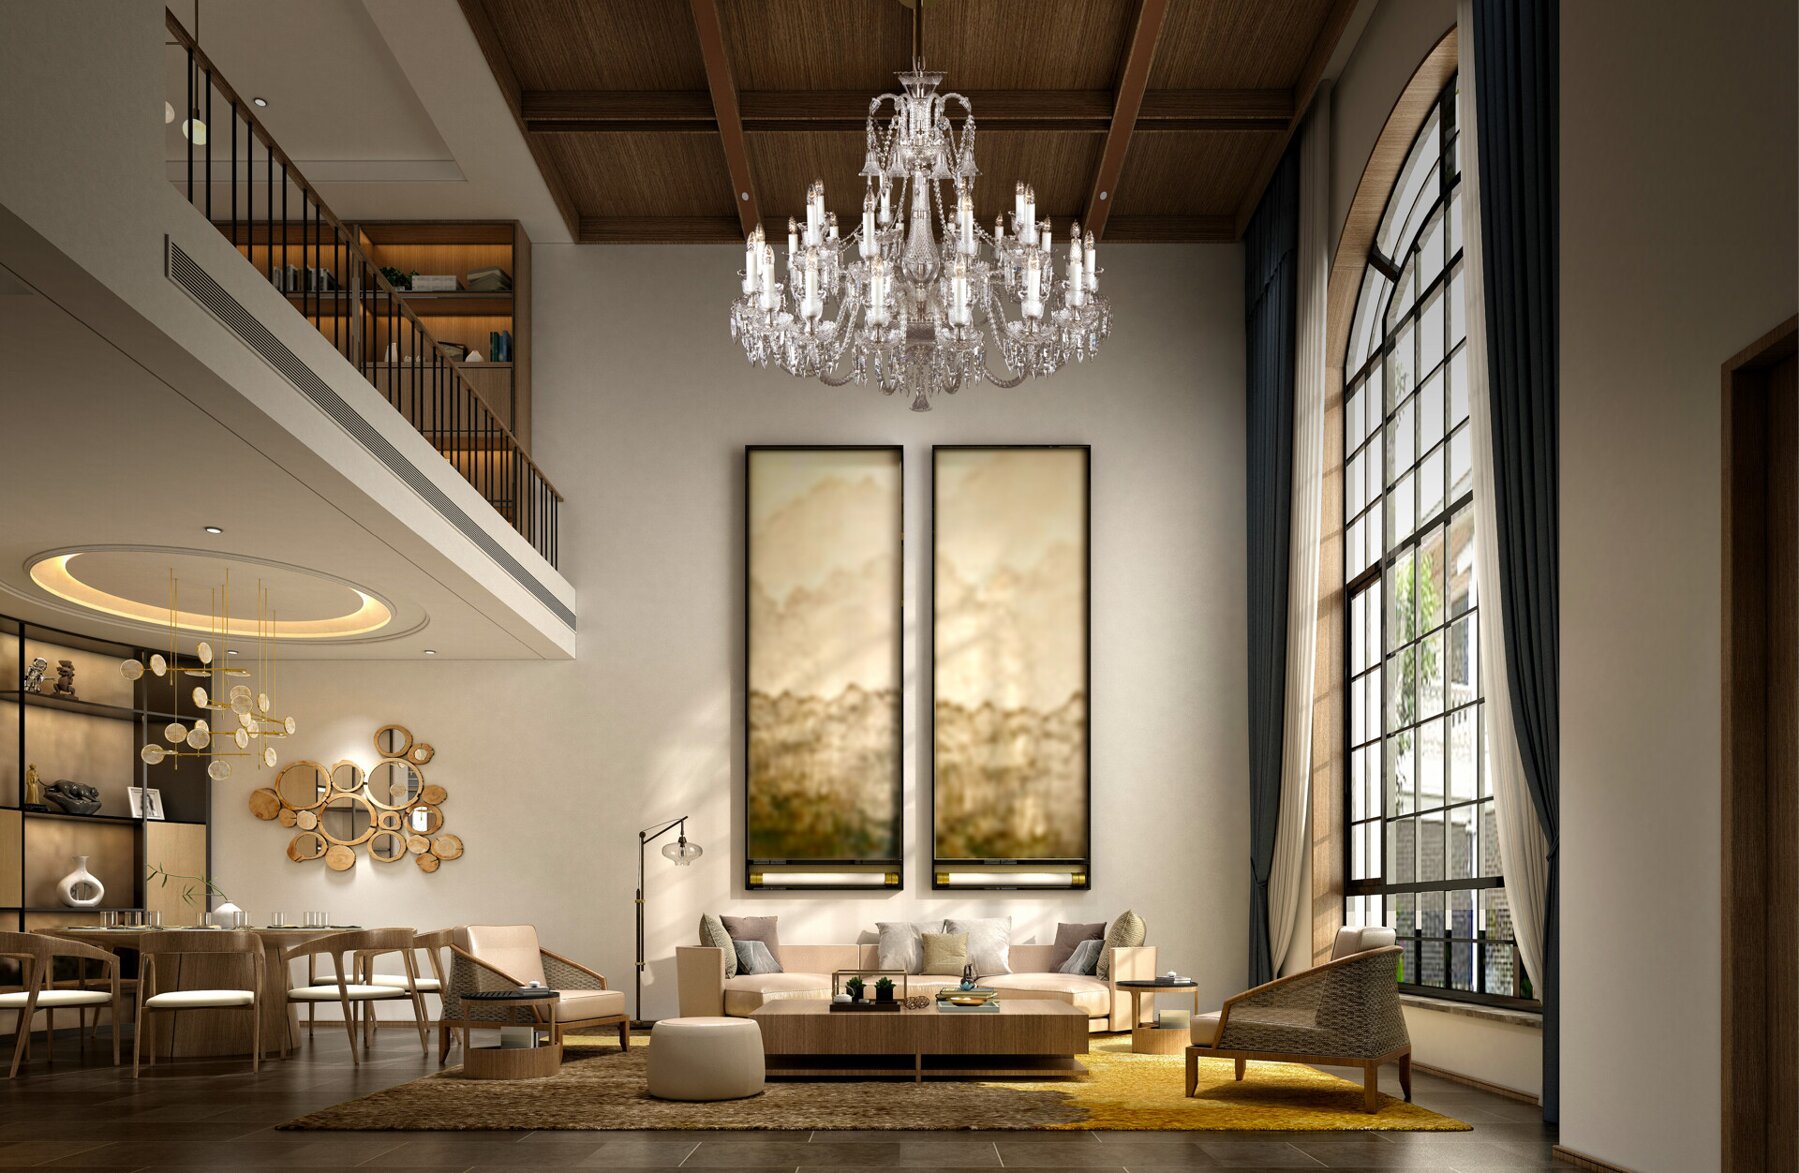 Living Room Crystal Chandelier in modern style  EL67616+803AD4